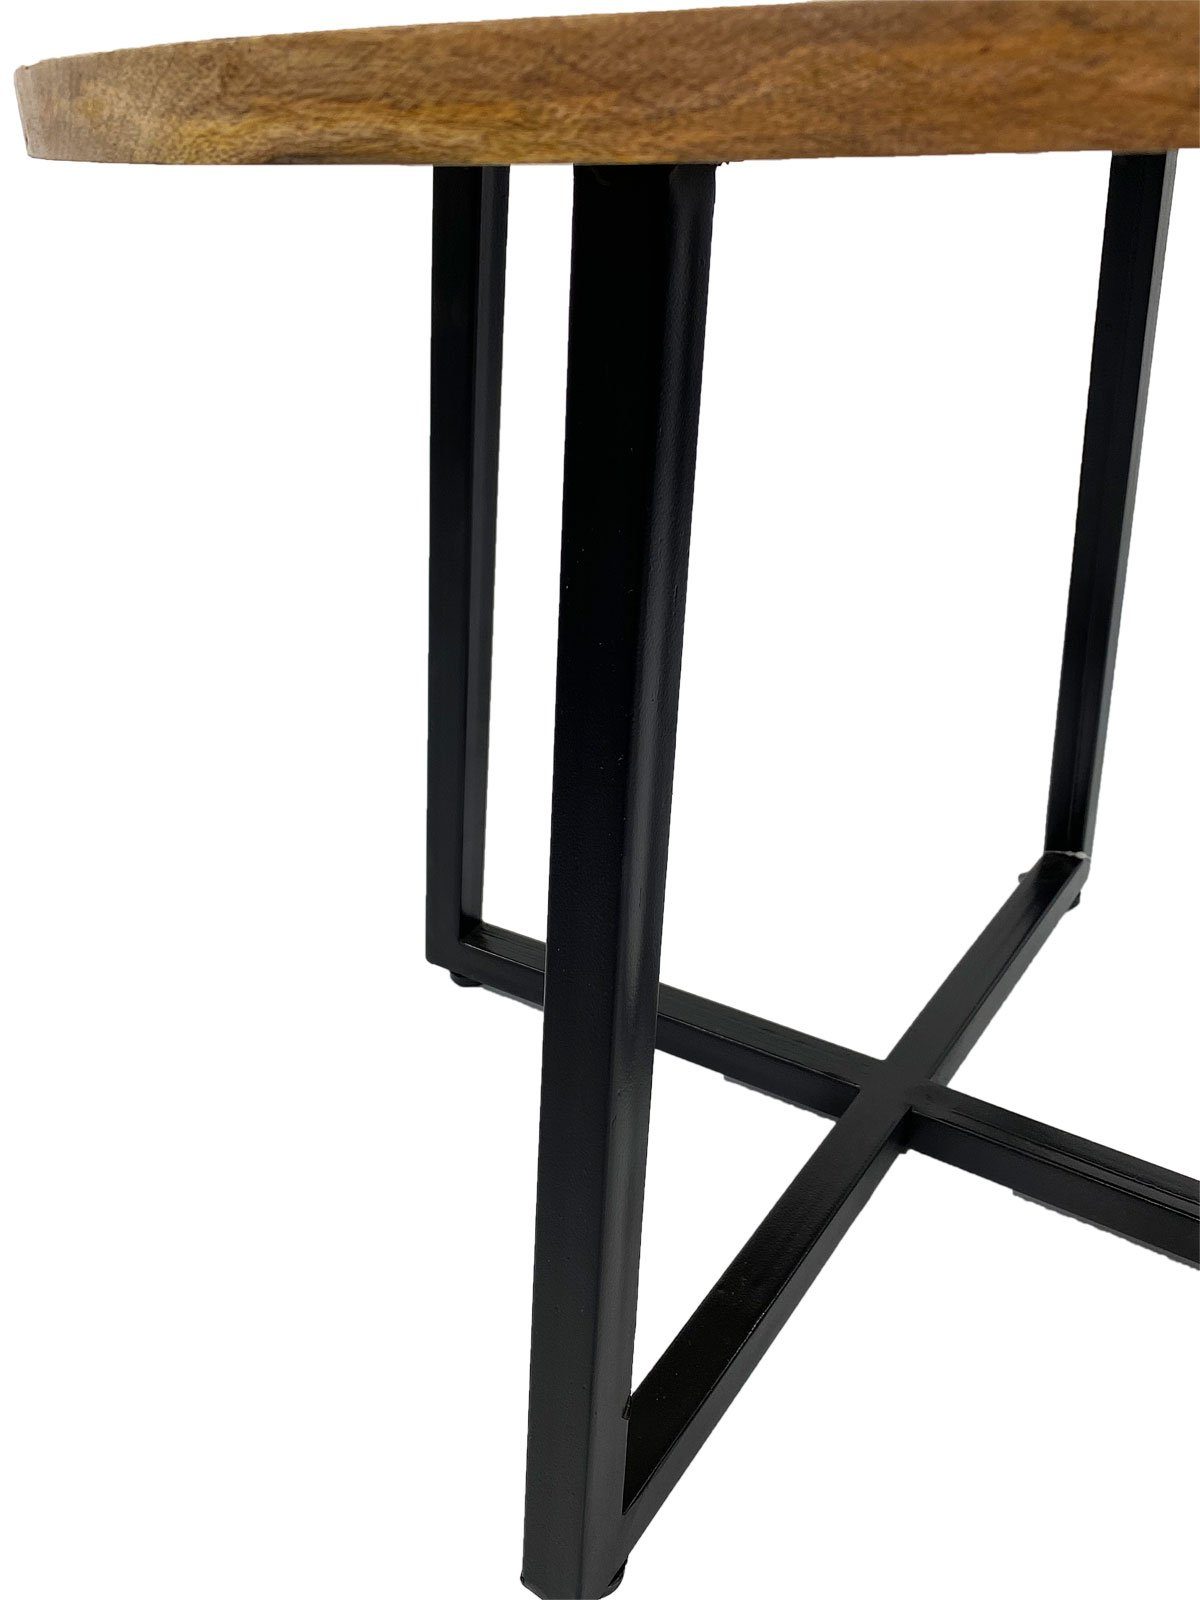 sch schwarz rund Couchtisch Beistelltisch 60cm Metall-Gestell Cannes Couchtisch Minara matt